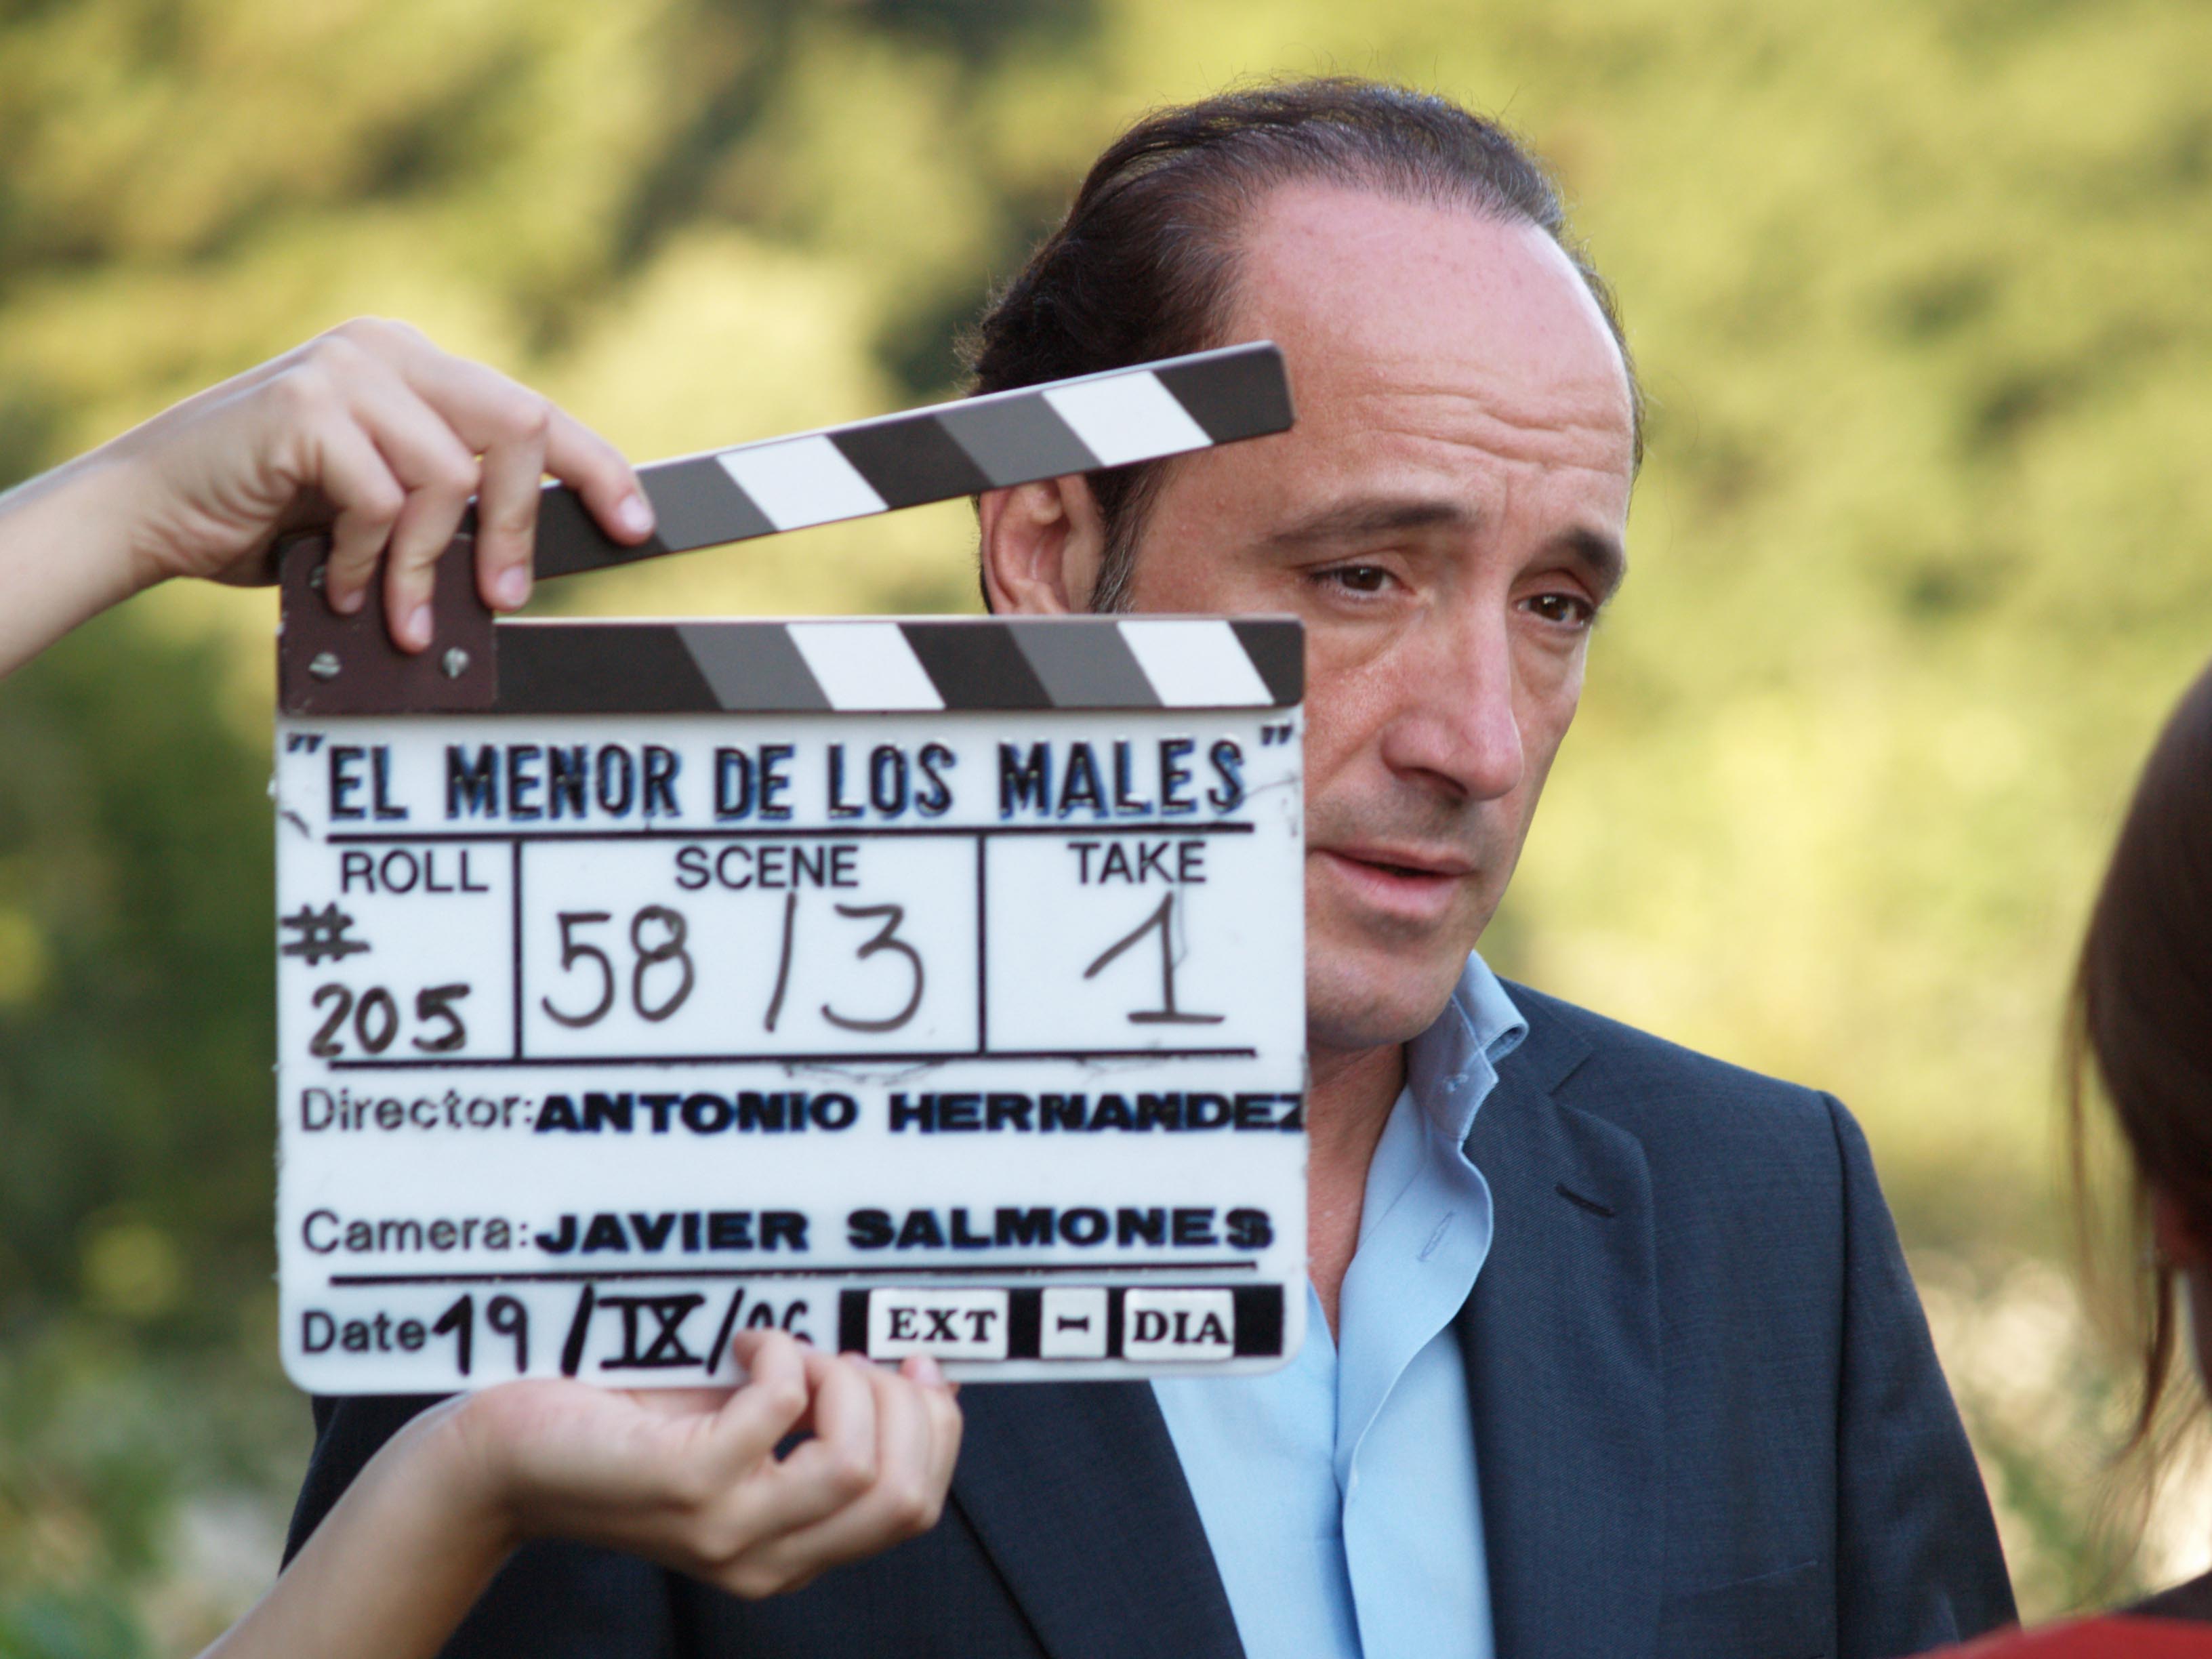 Roberto Álvarez in El menor de los males (2007)